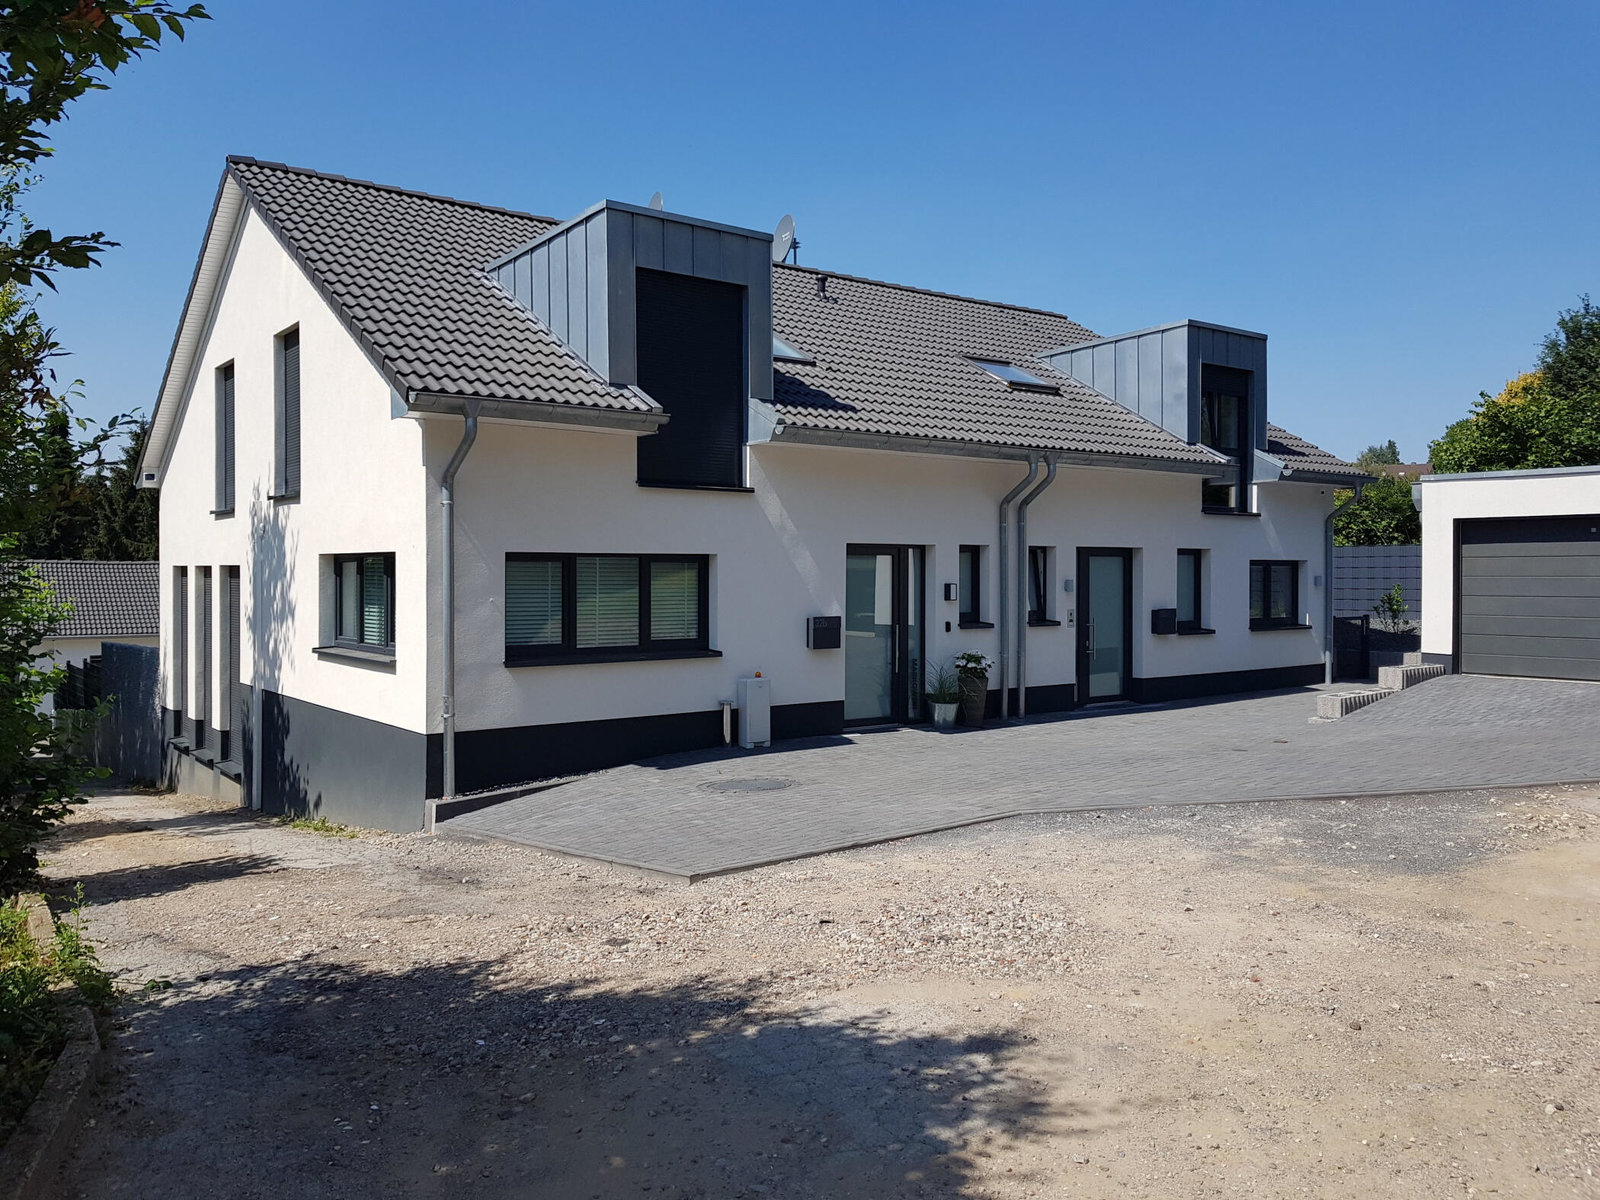 Bau von Doppelhaushälften durch das Architekturbüro Buhrdorf